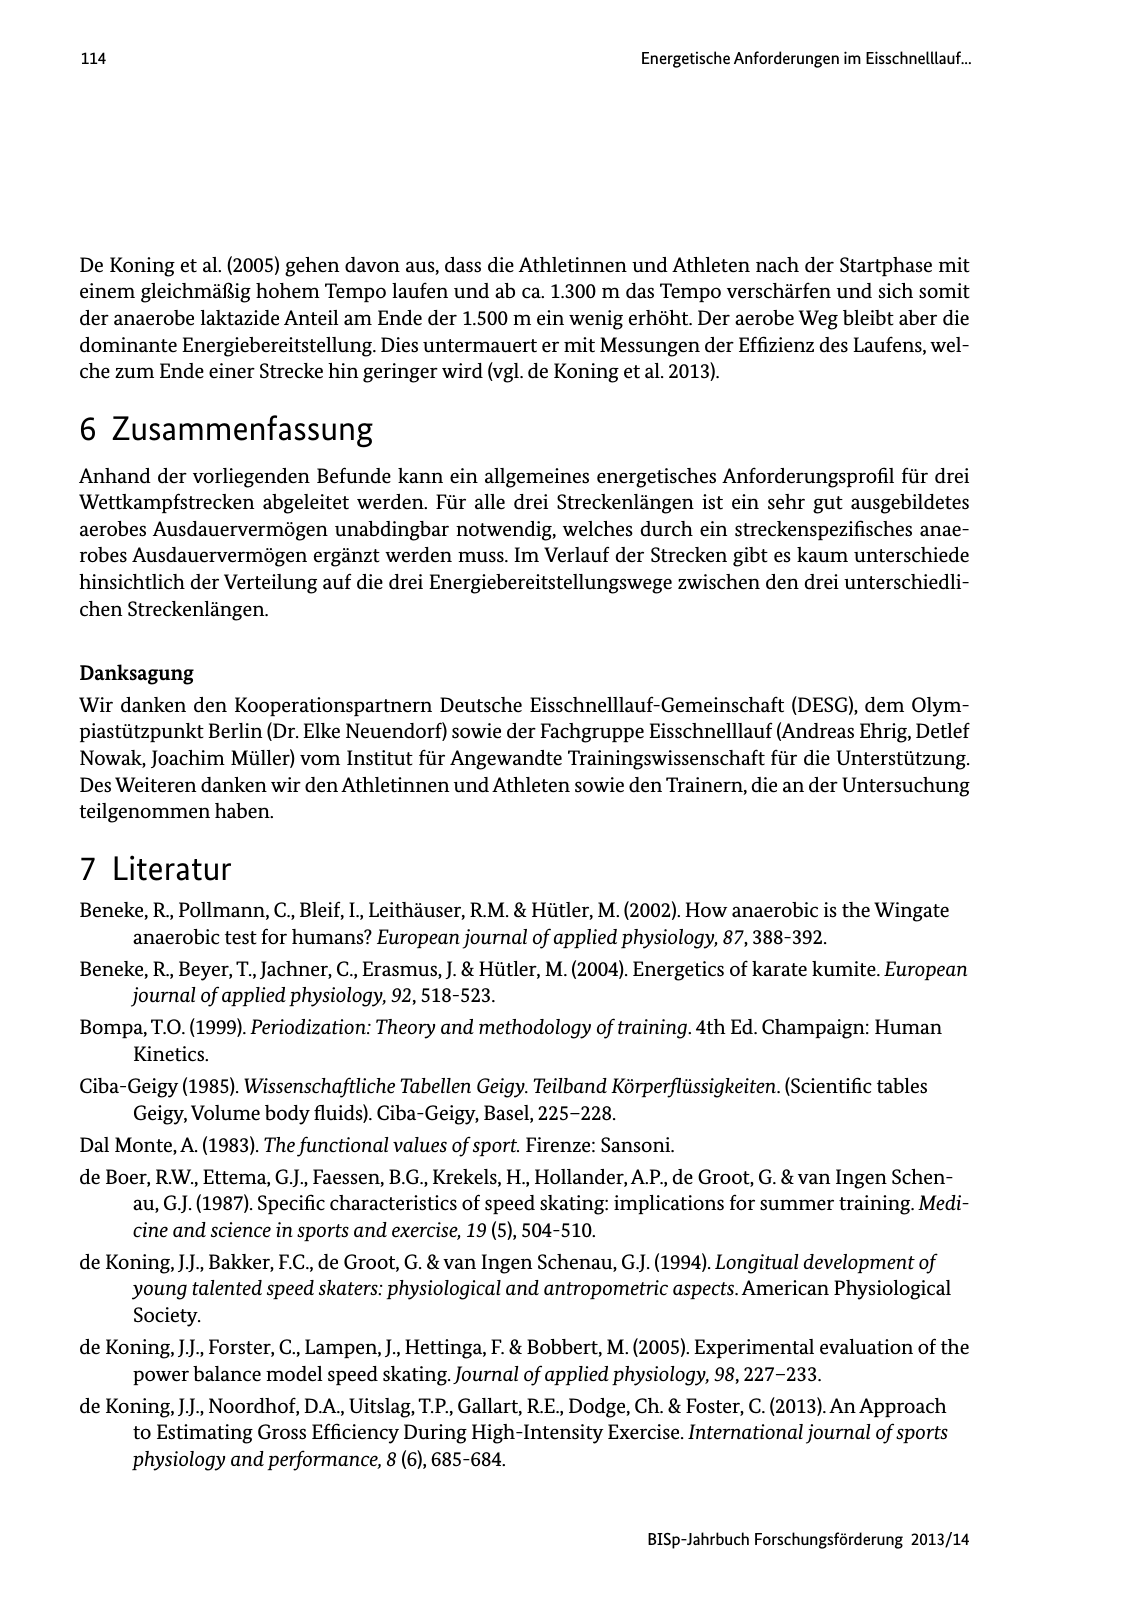 Vorschau BISp-Jahrbuch Forschungsförderung 2013/14 Seite 115